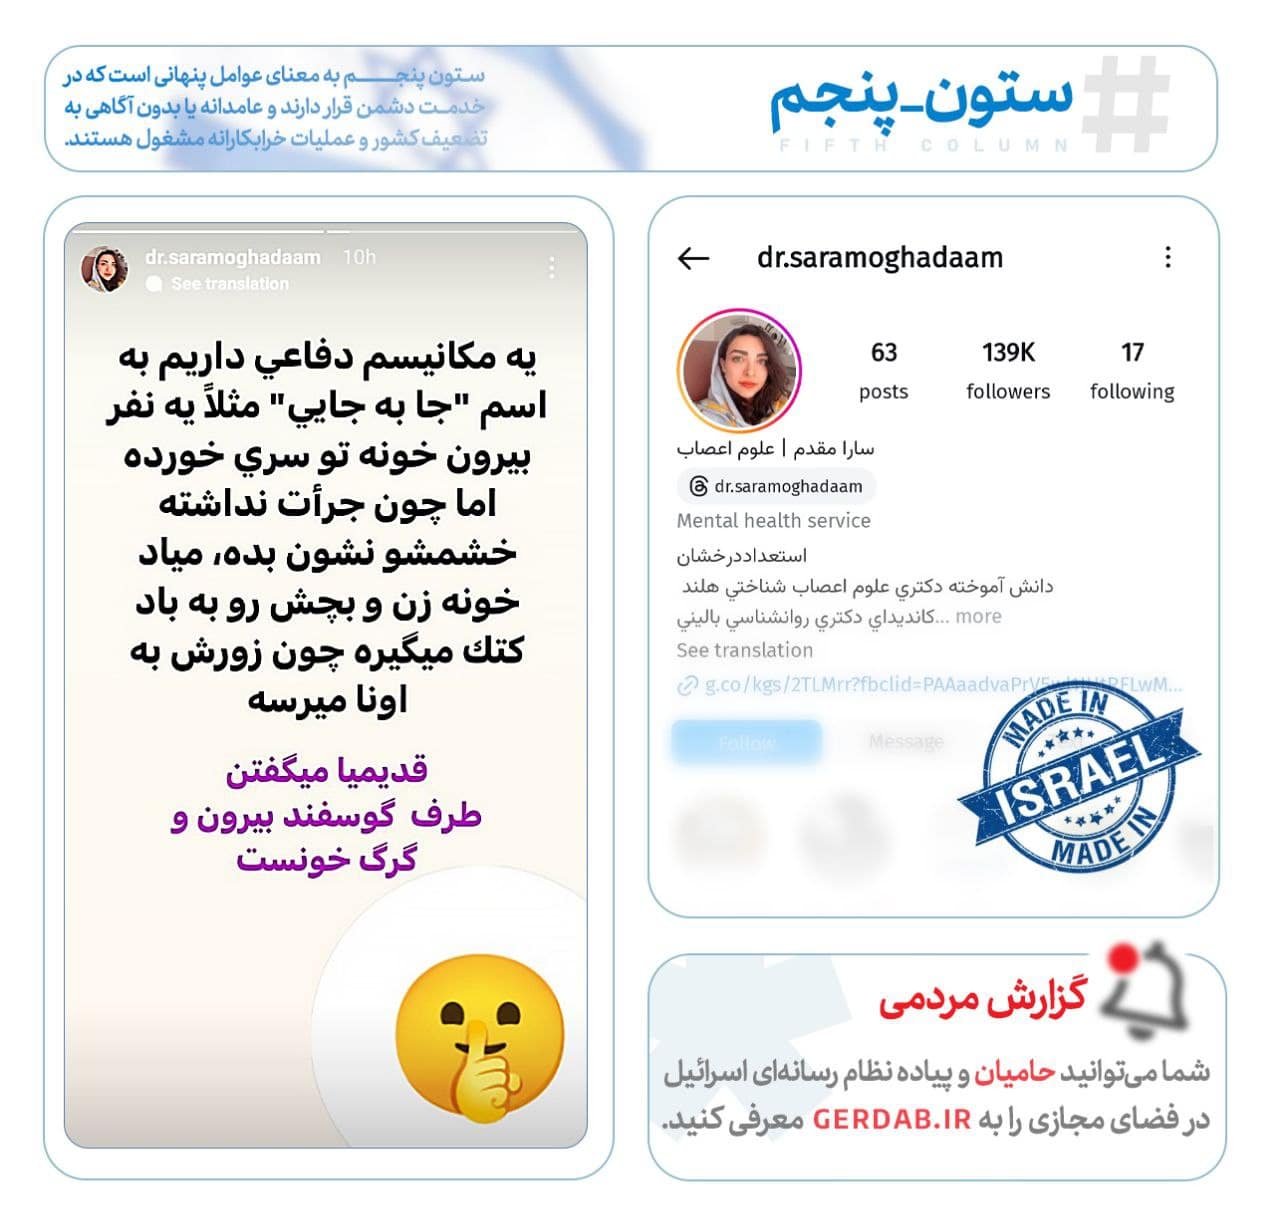 عکس پایان حمایت وبلاگ نویس ایرانی از اسرائیل در اینستاگرام